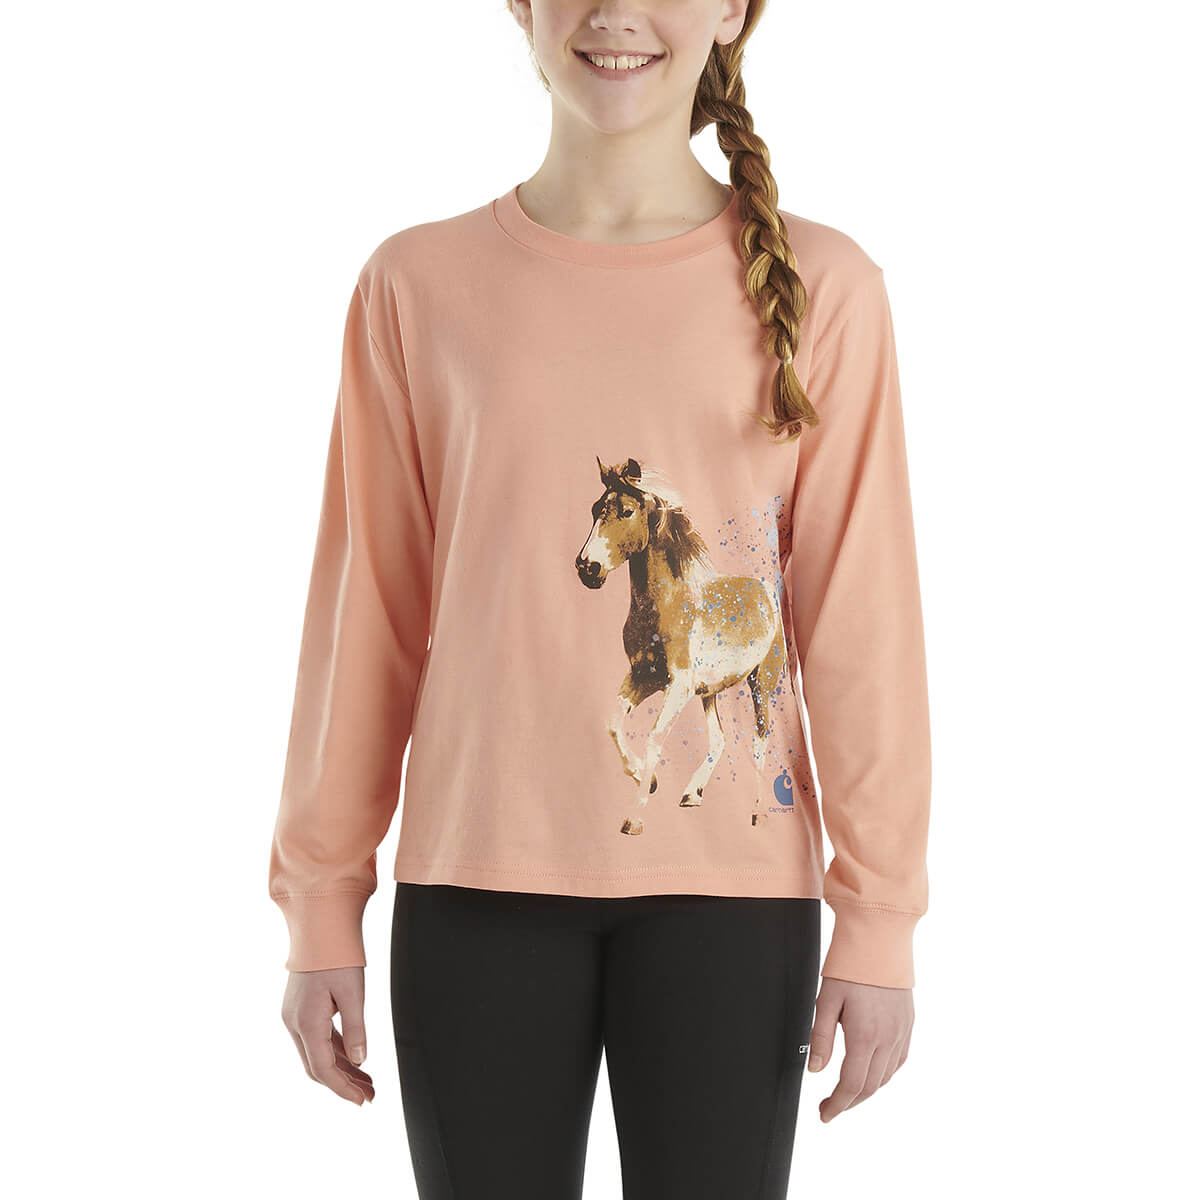 Carhartt Kid's Long Sleeve Running Horse T-Shirt - Peach Amber